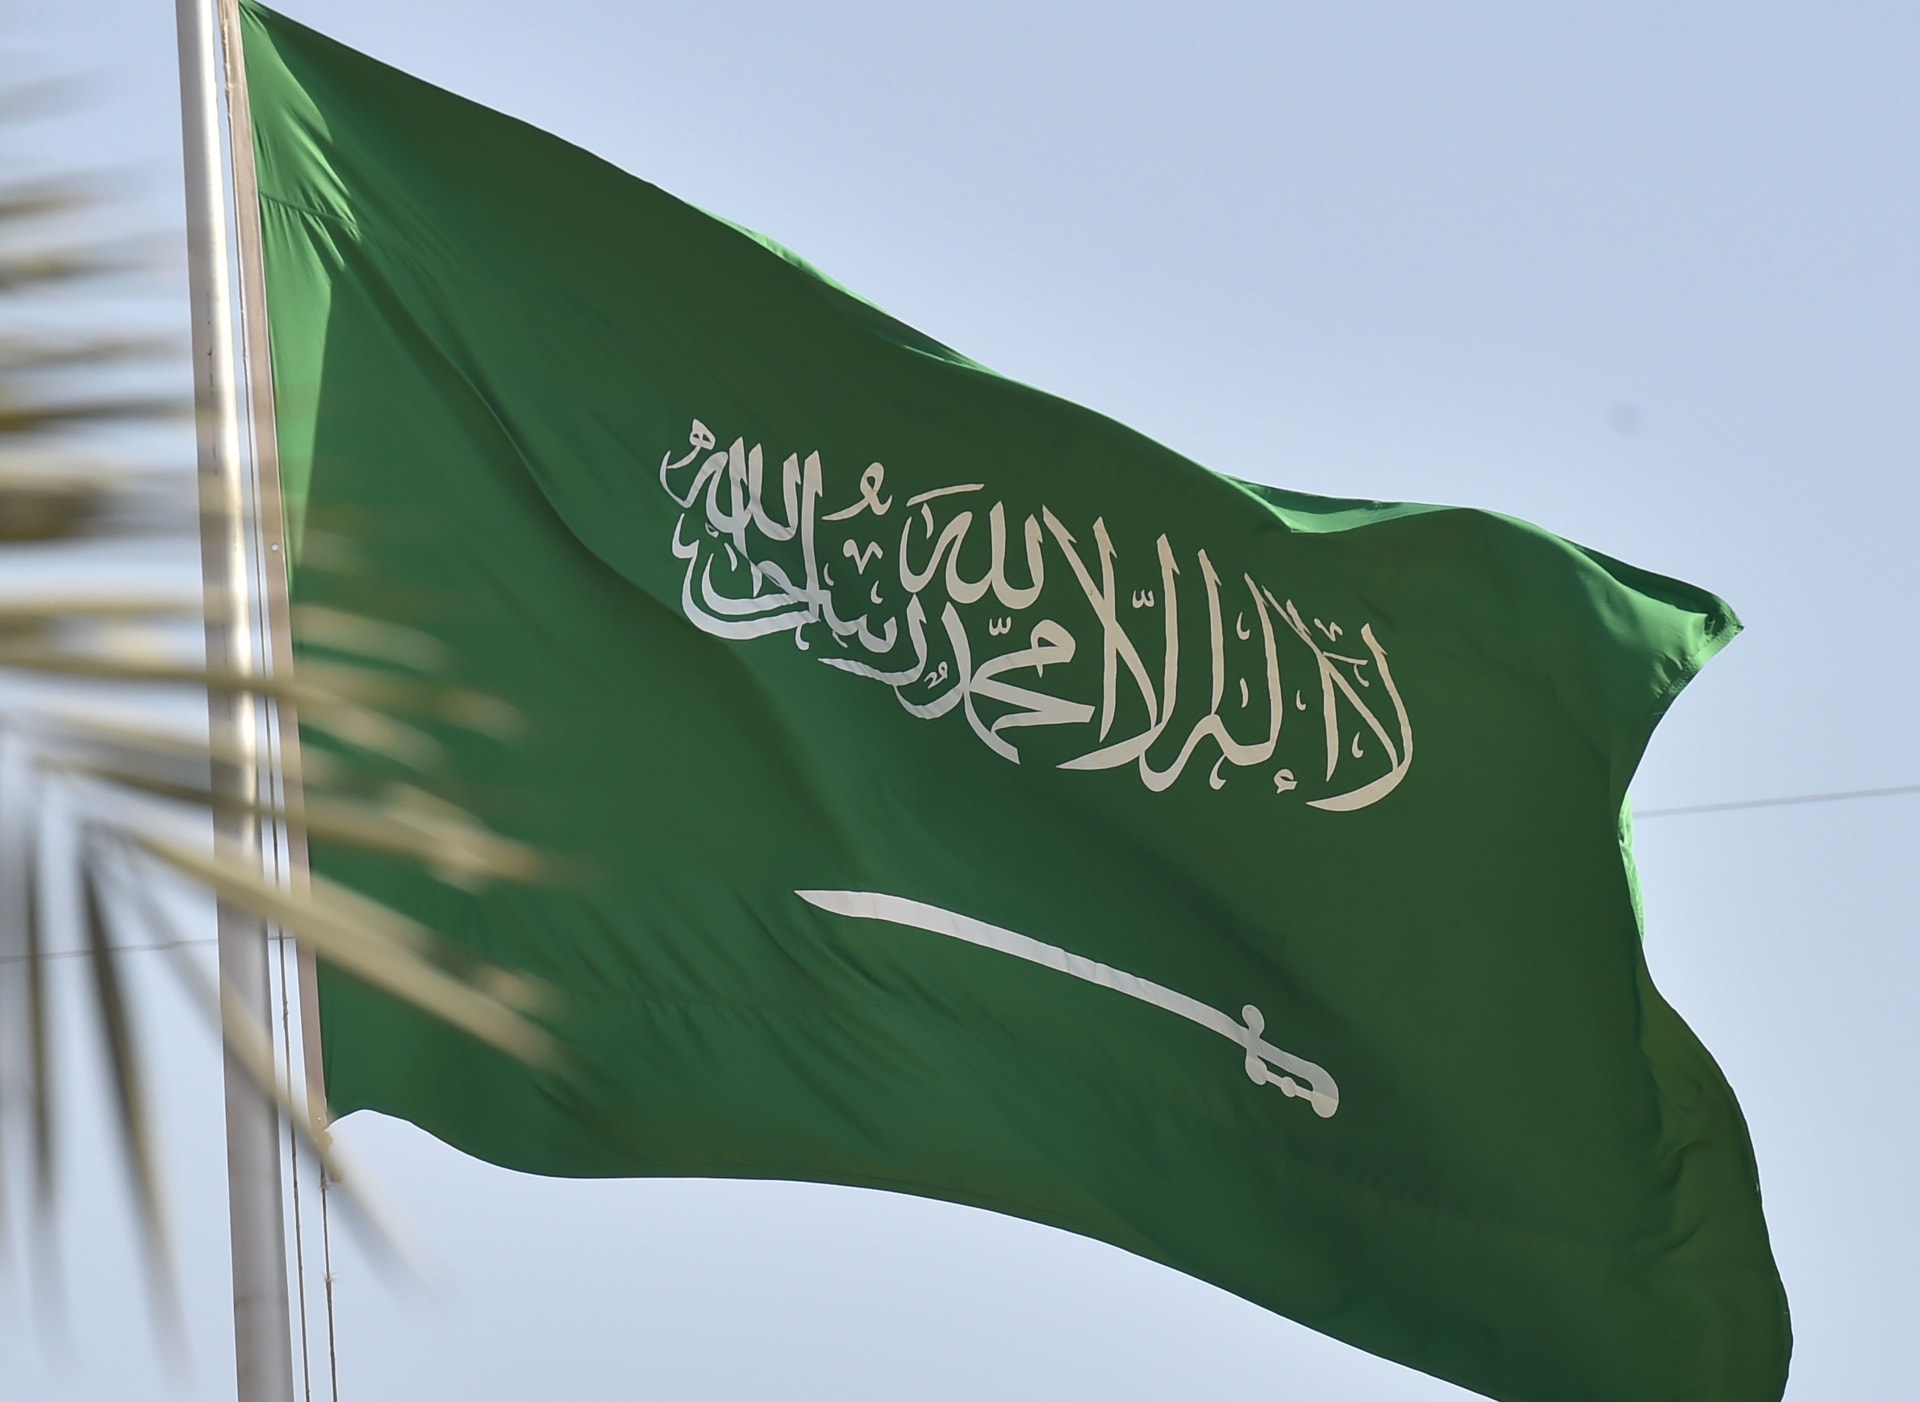 السعودية: القبض على 8 مقيمين بتهم انتحال صفة رجال أمن والسلب والاعتداء